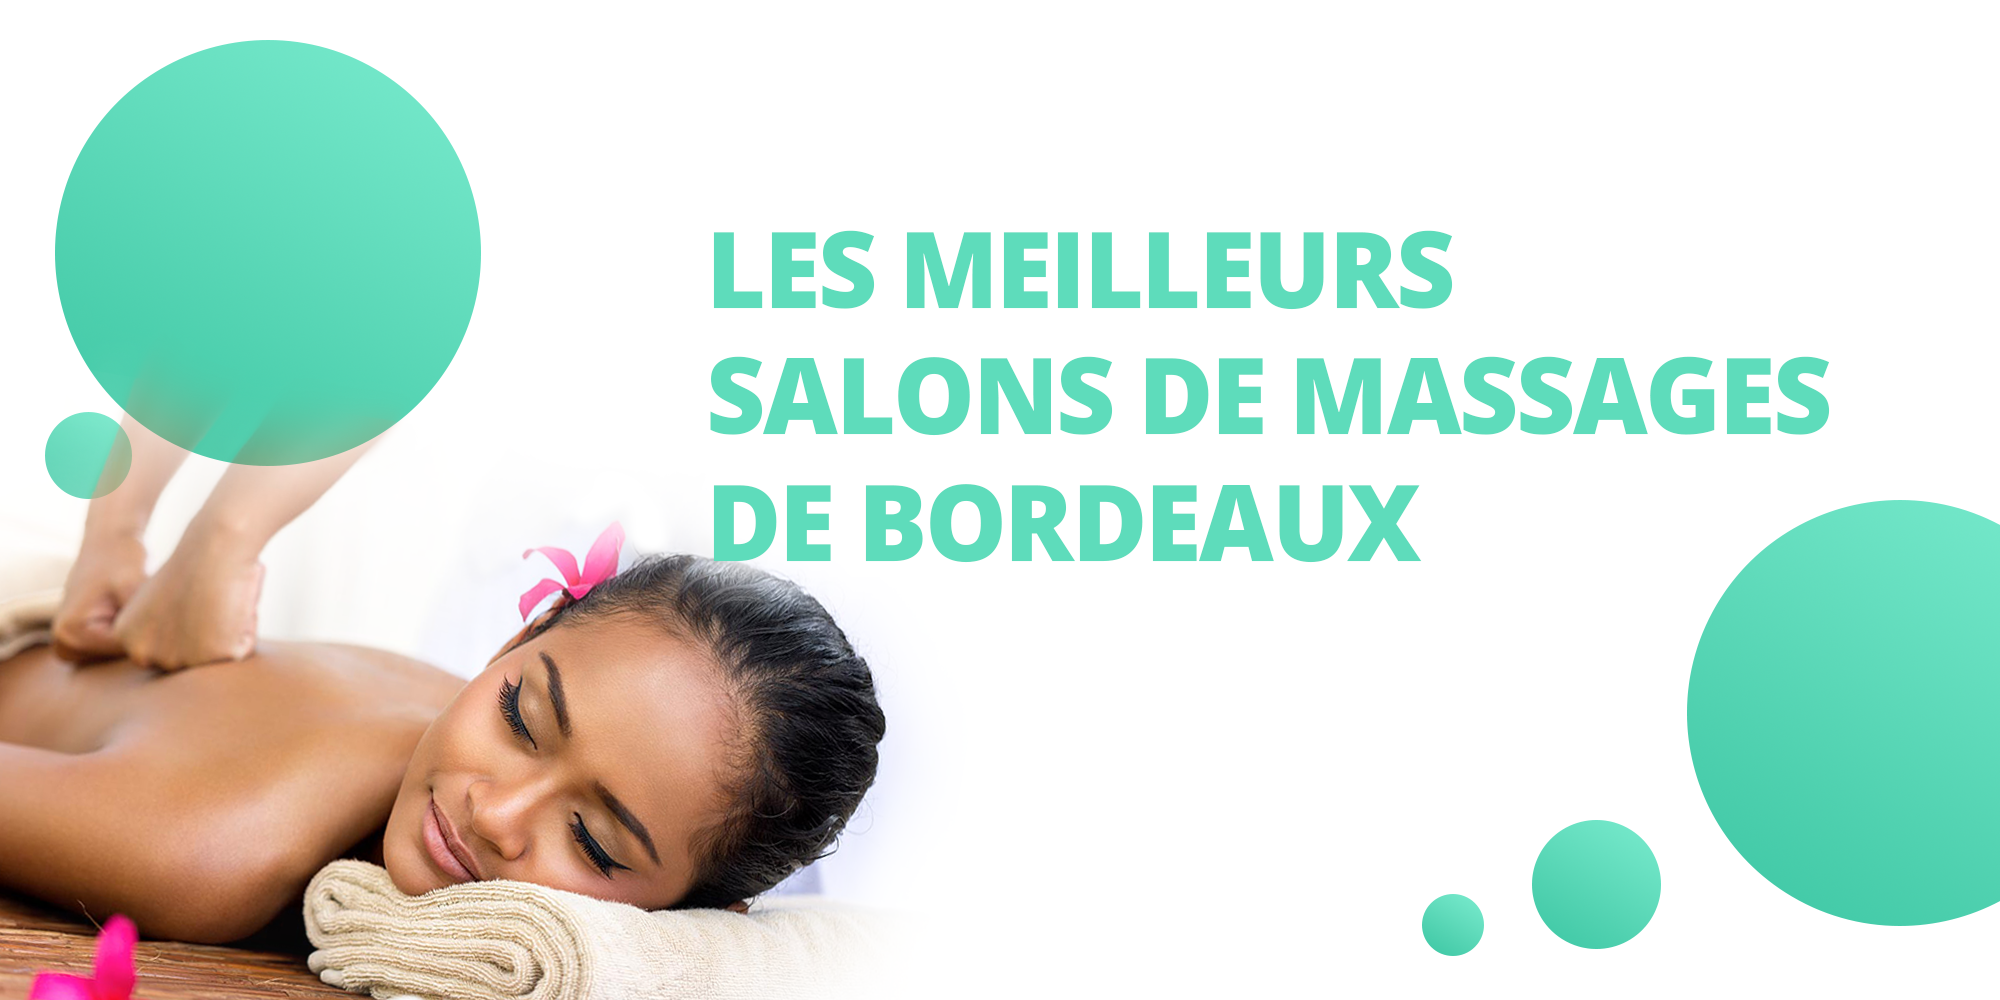 Les meilleurs salons de massages de Bordeaux